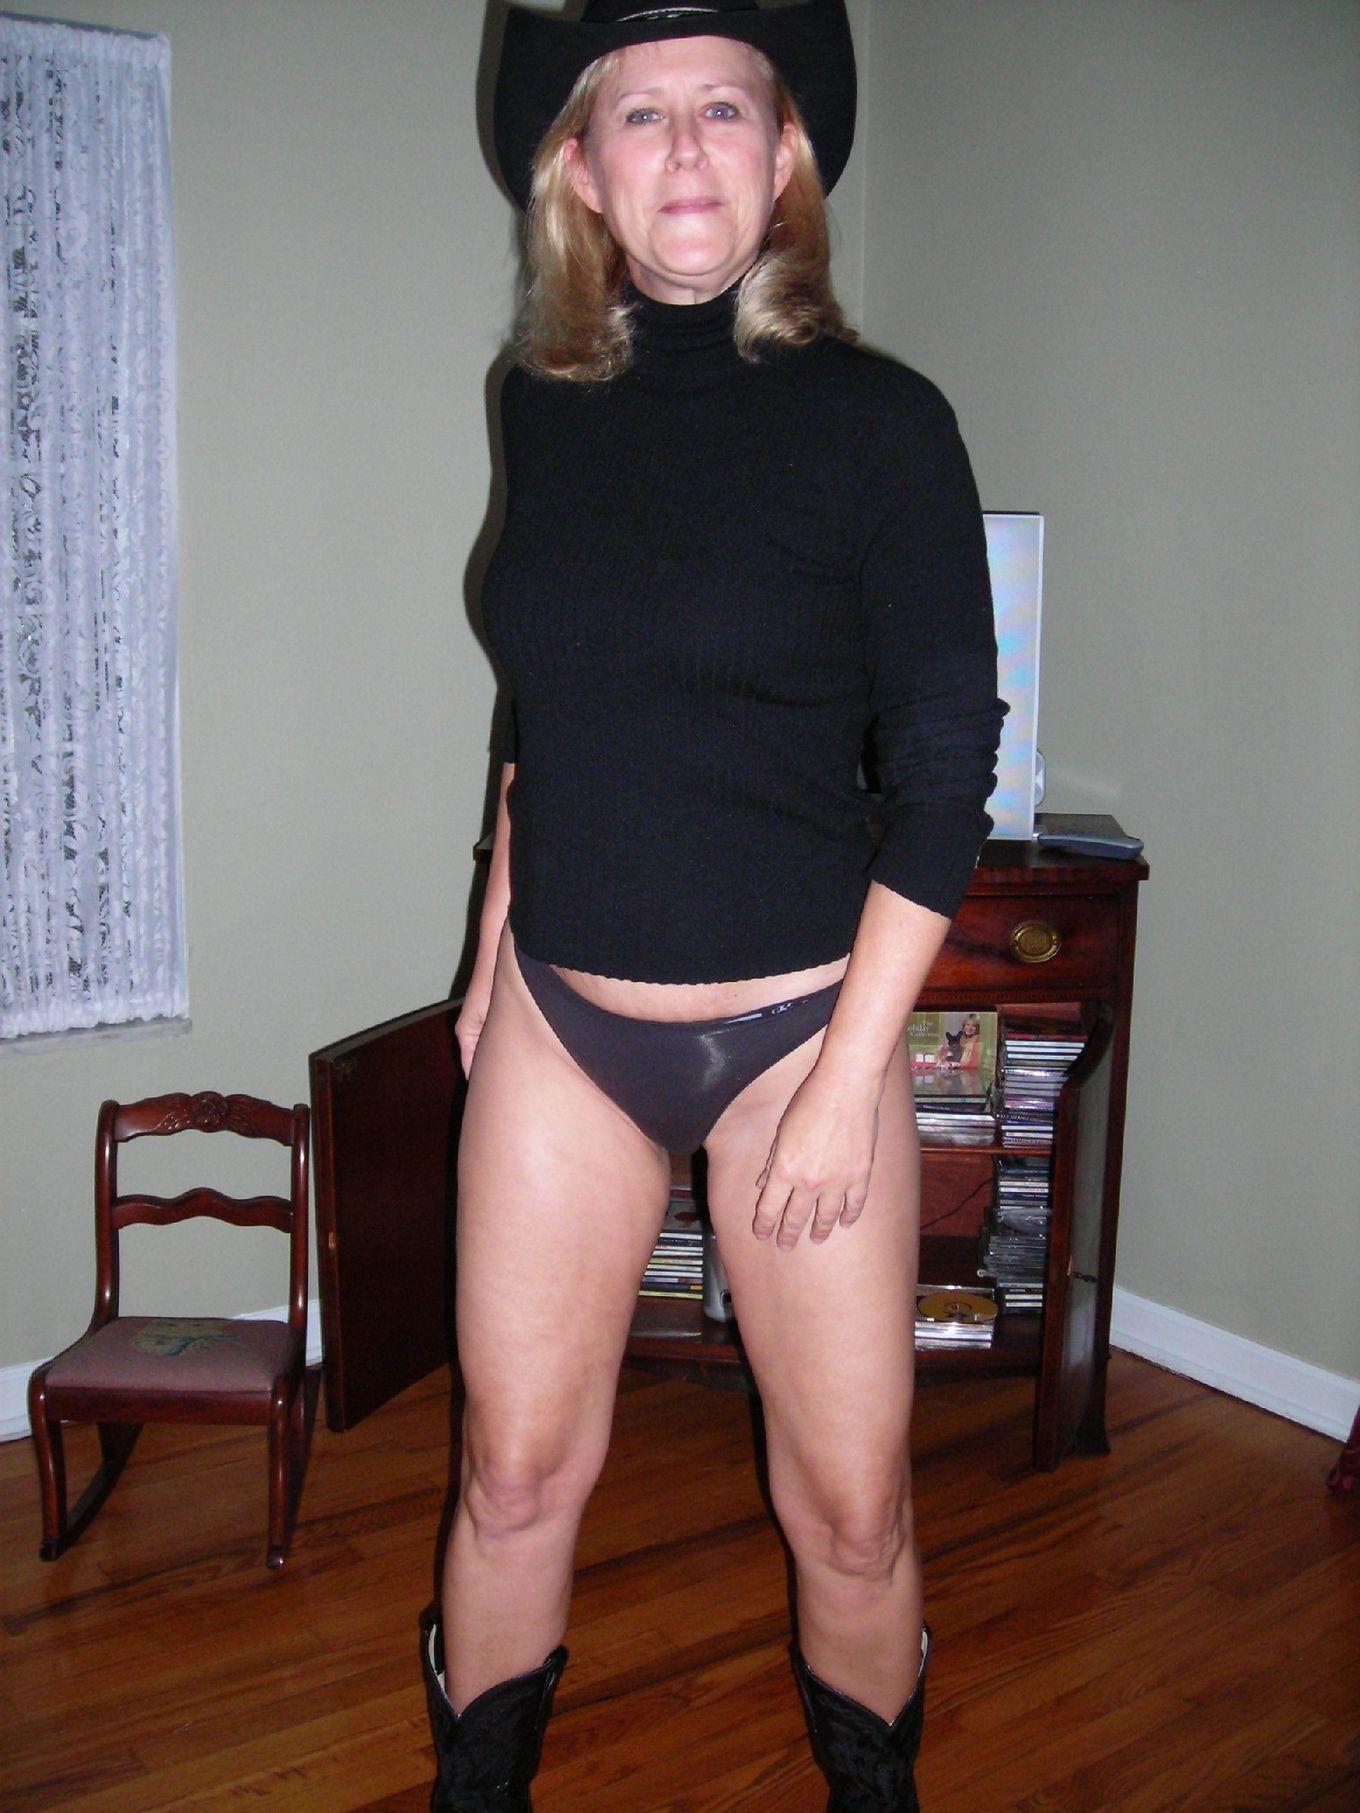 Женщина показывает свое зрелое тело, одевшись в эротический прикид